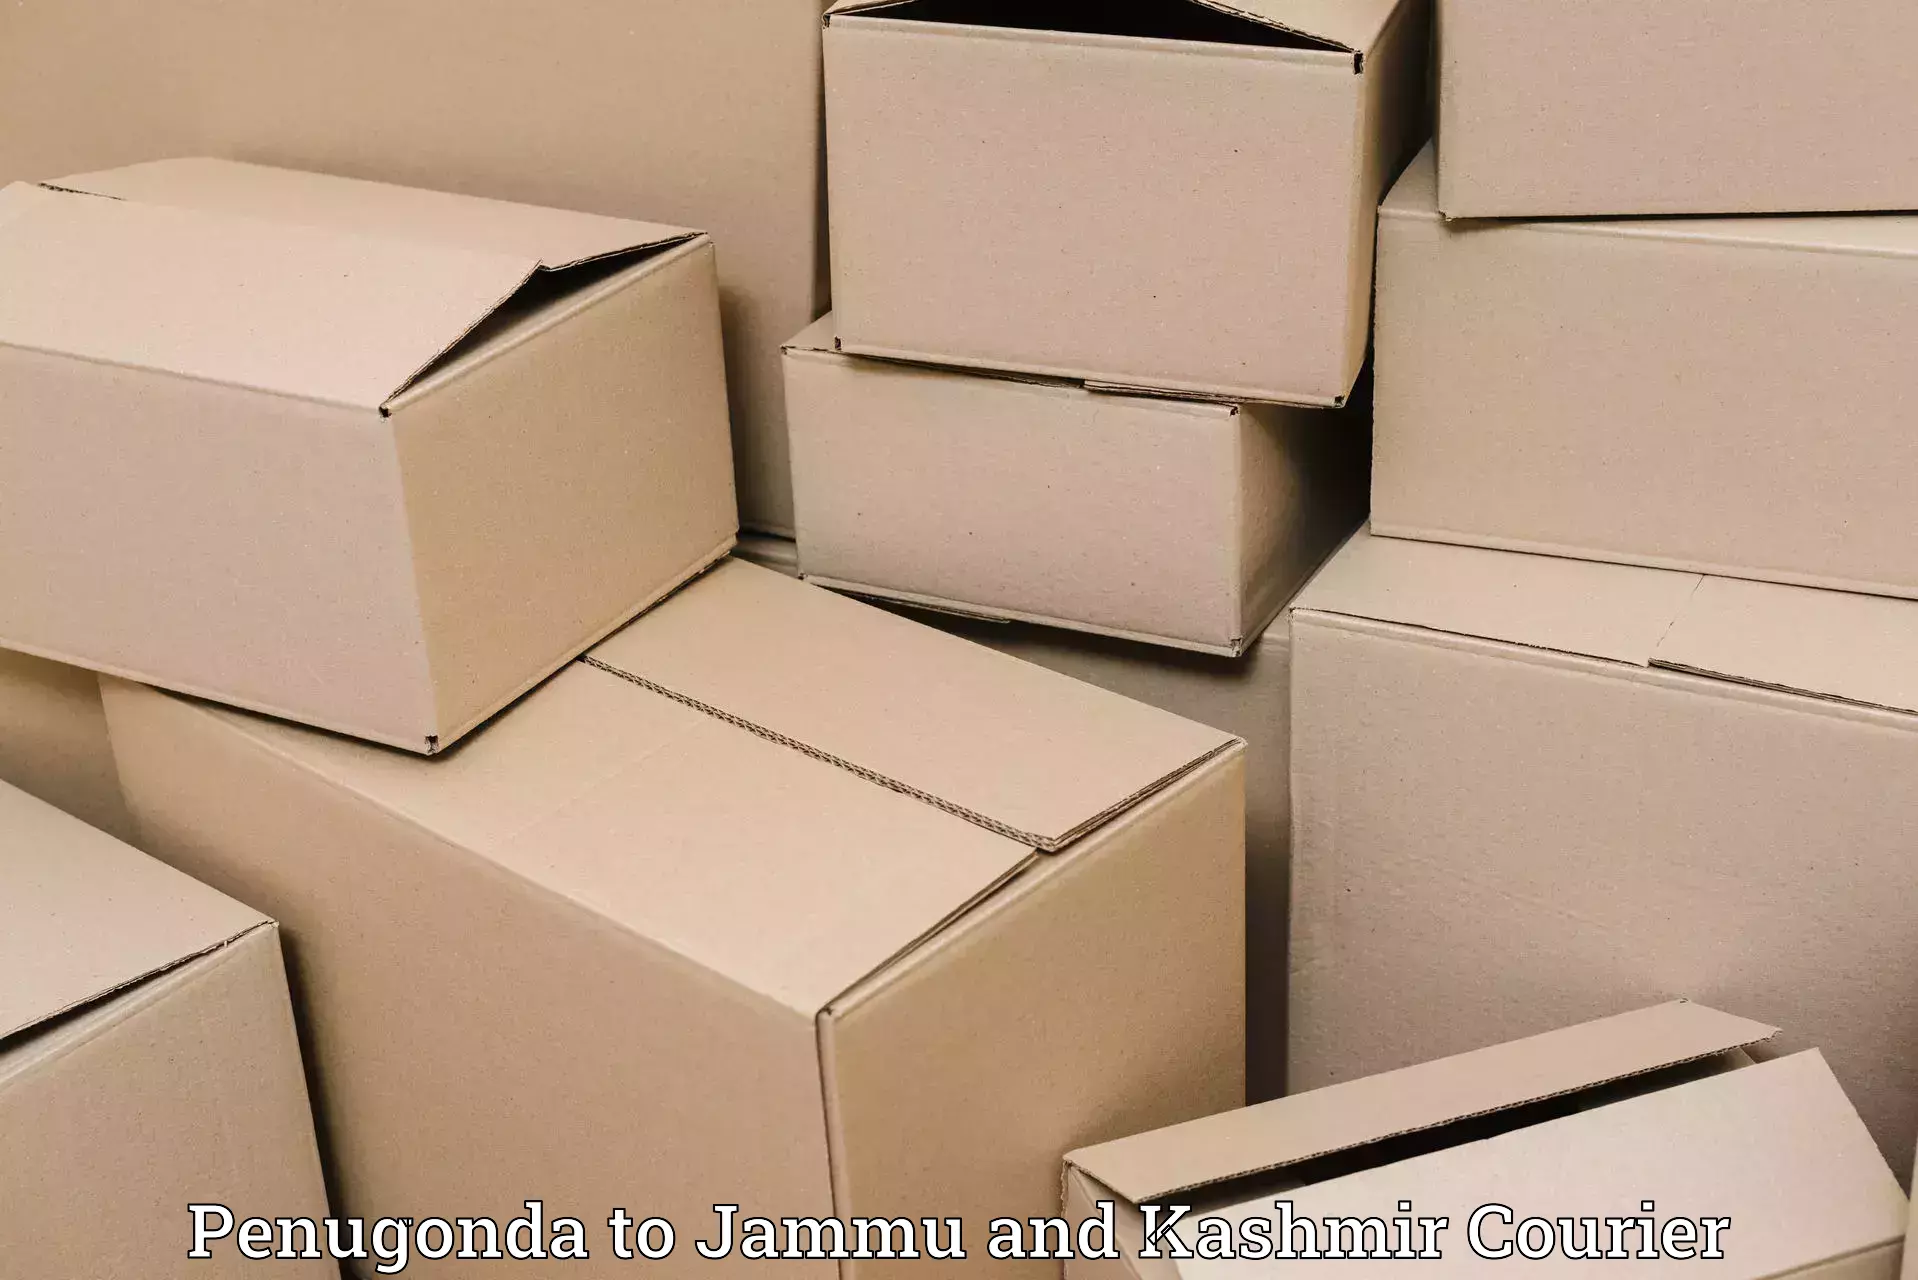 Efficient cargo handling Penugonda to Jammu